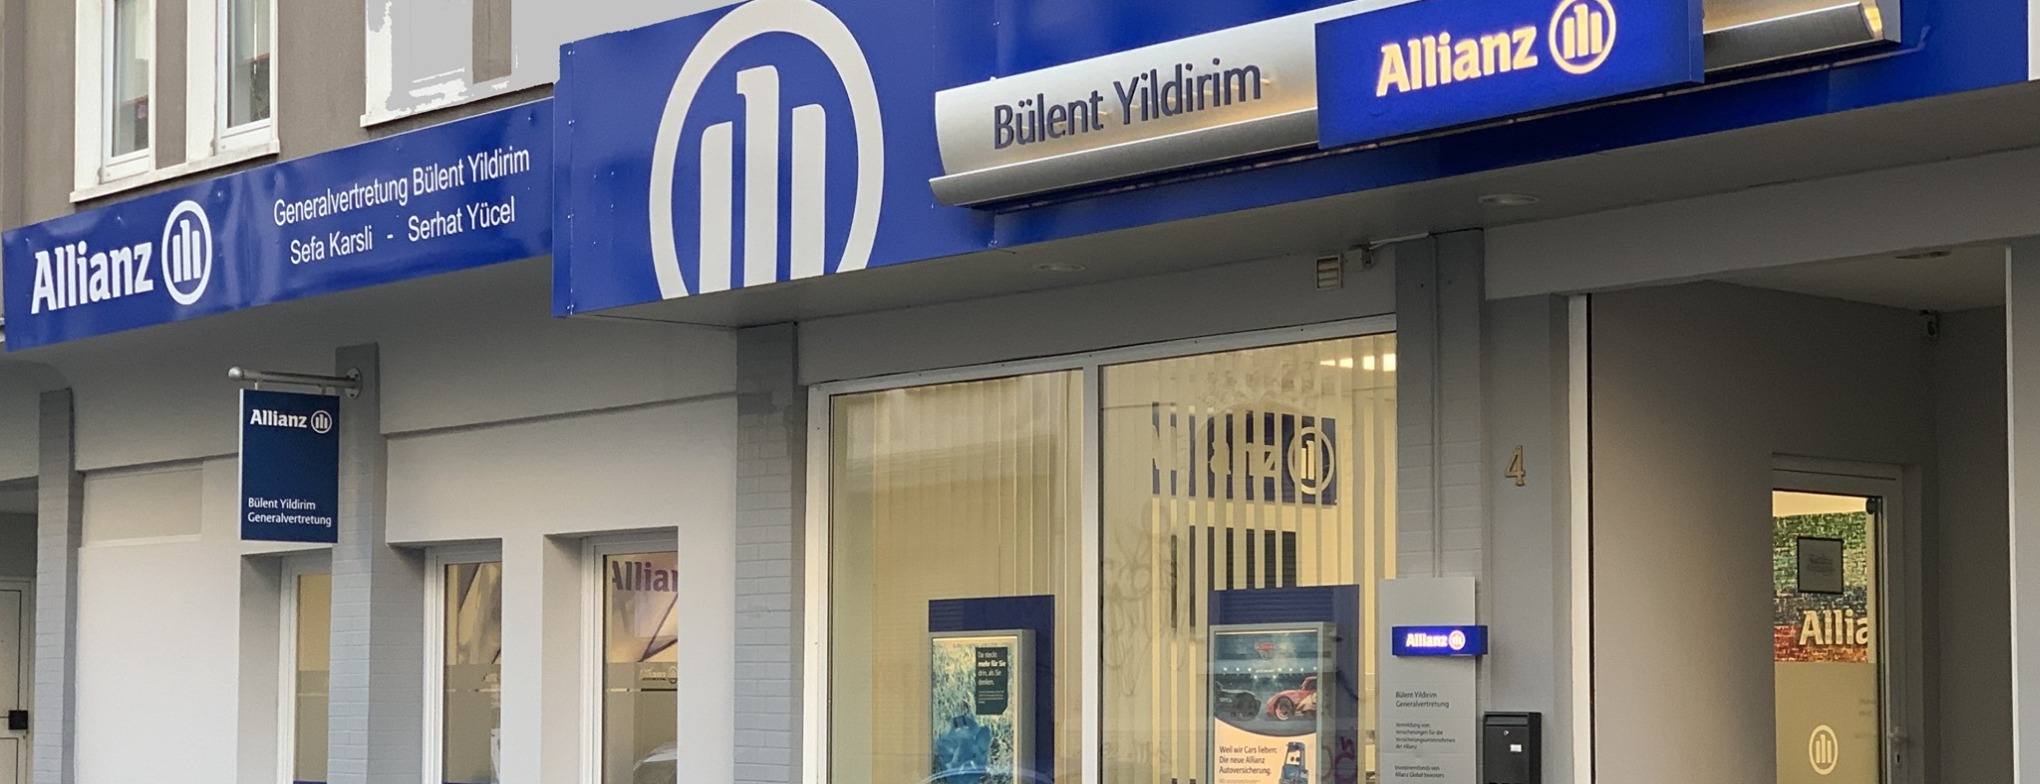 Allianz Versicherung Bülent Yildirim Dortmund - KFZ Hausrat Haftpflicht Rechtsschutz Tierkranken